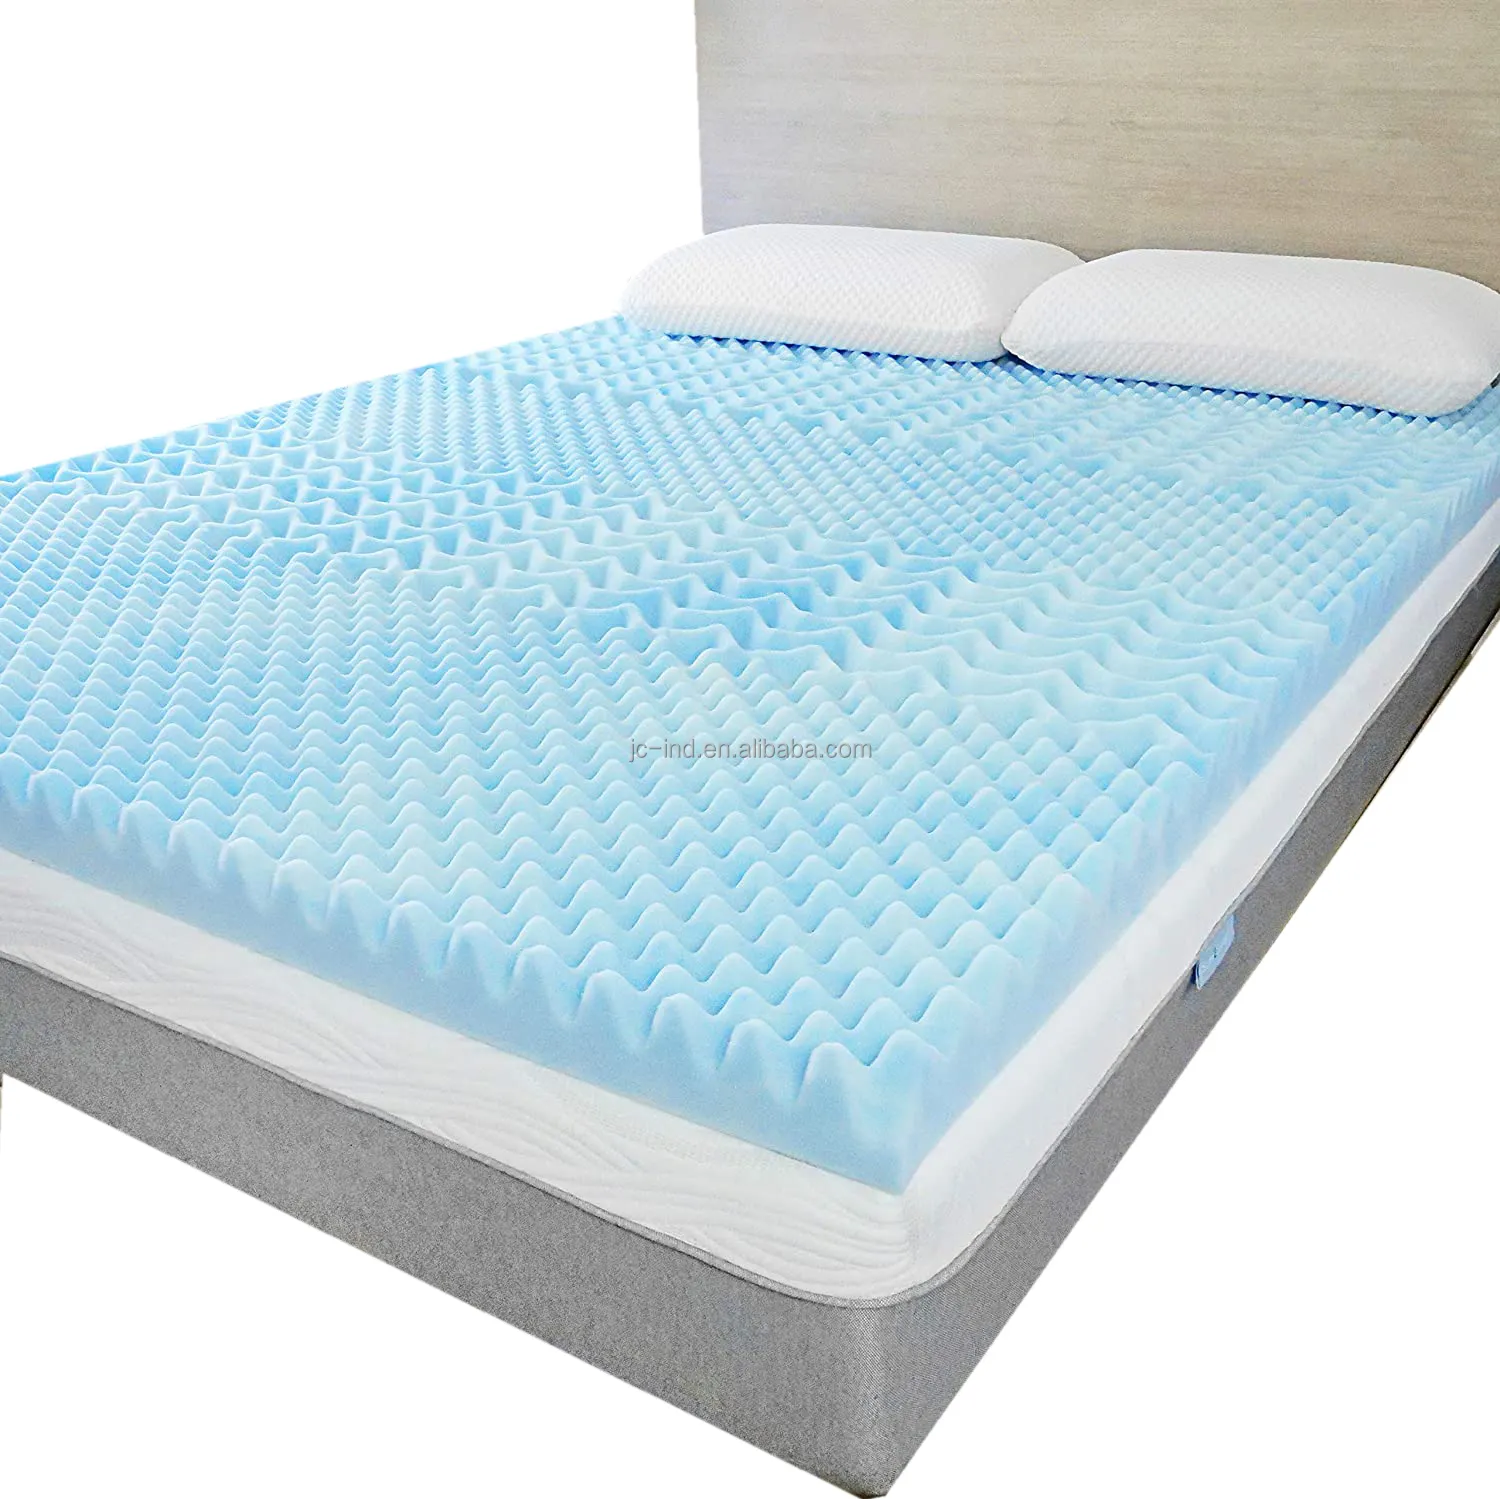 Soft Memory Foam Bett polster mit Kühlgel zur Linderung von Drucks ch merzen